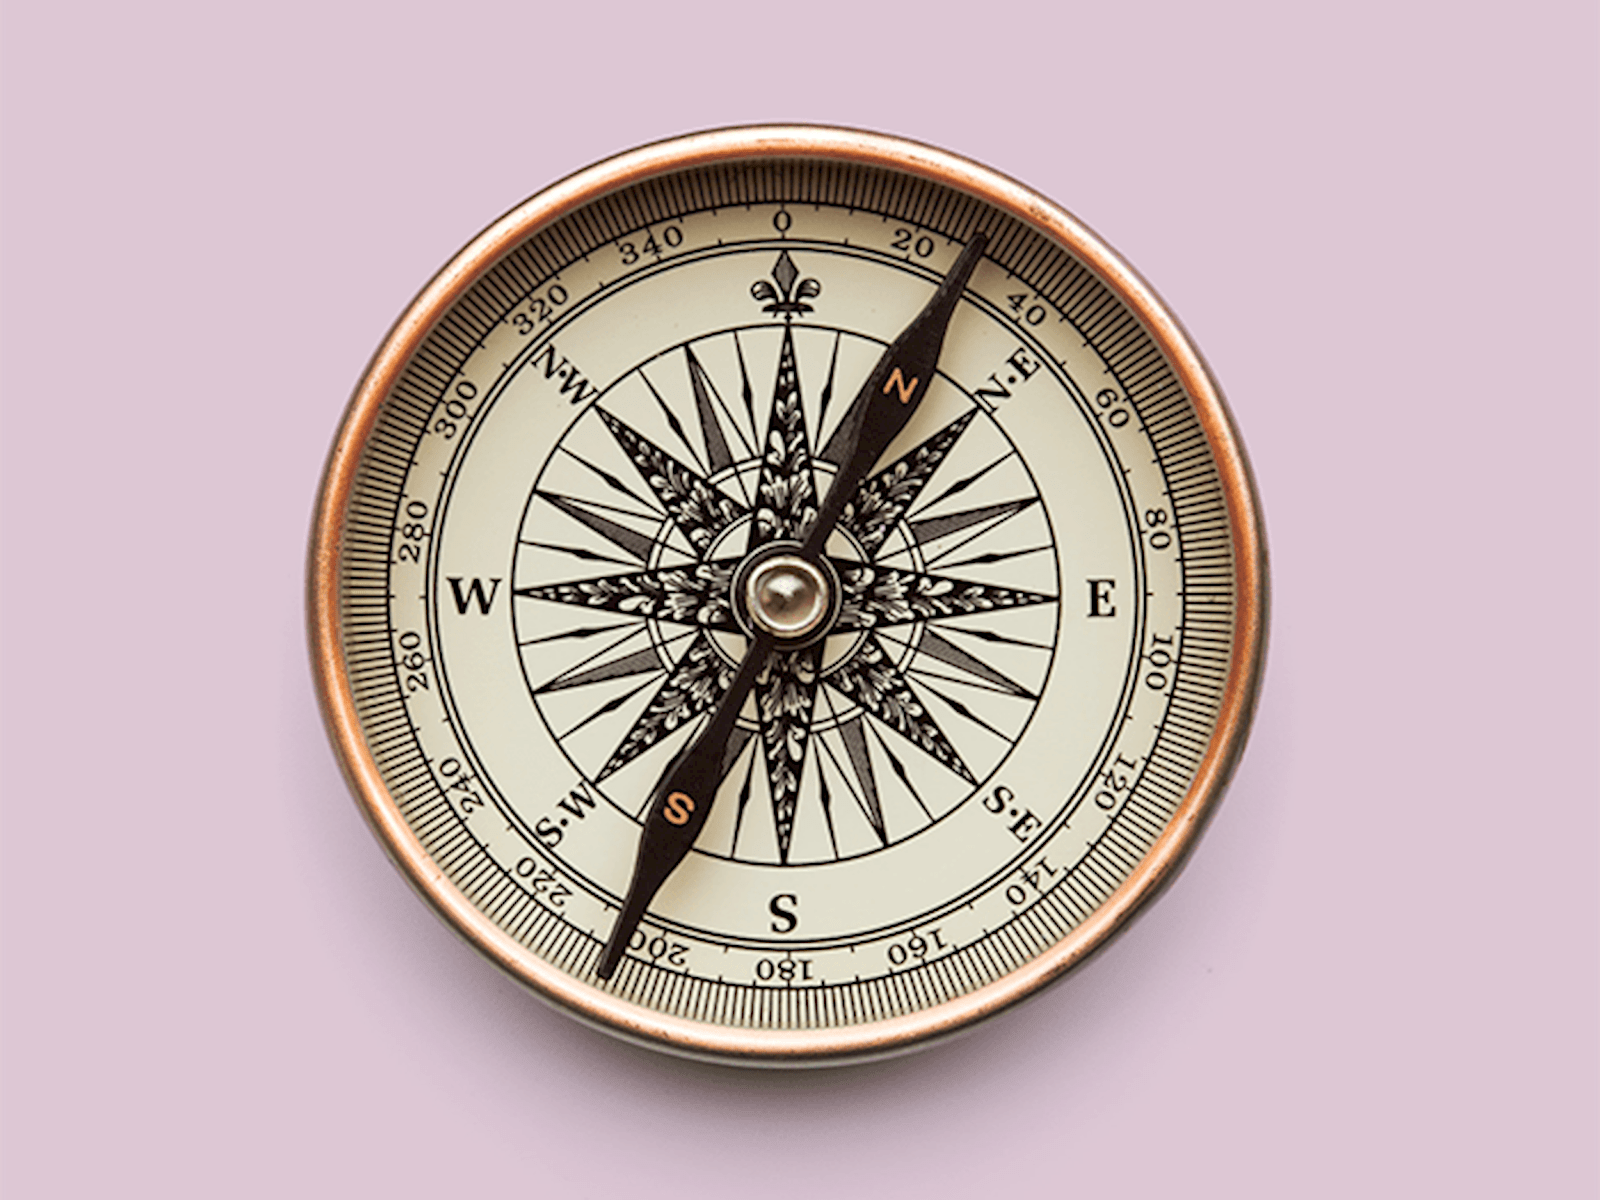 A compass